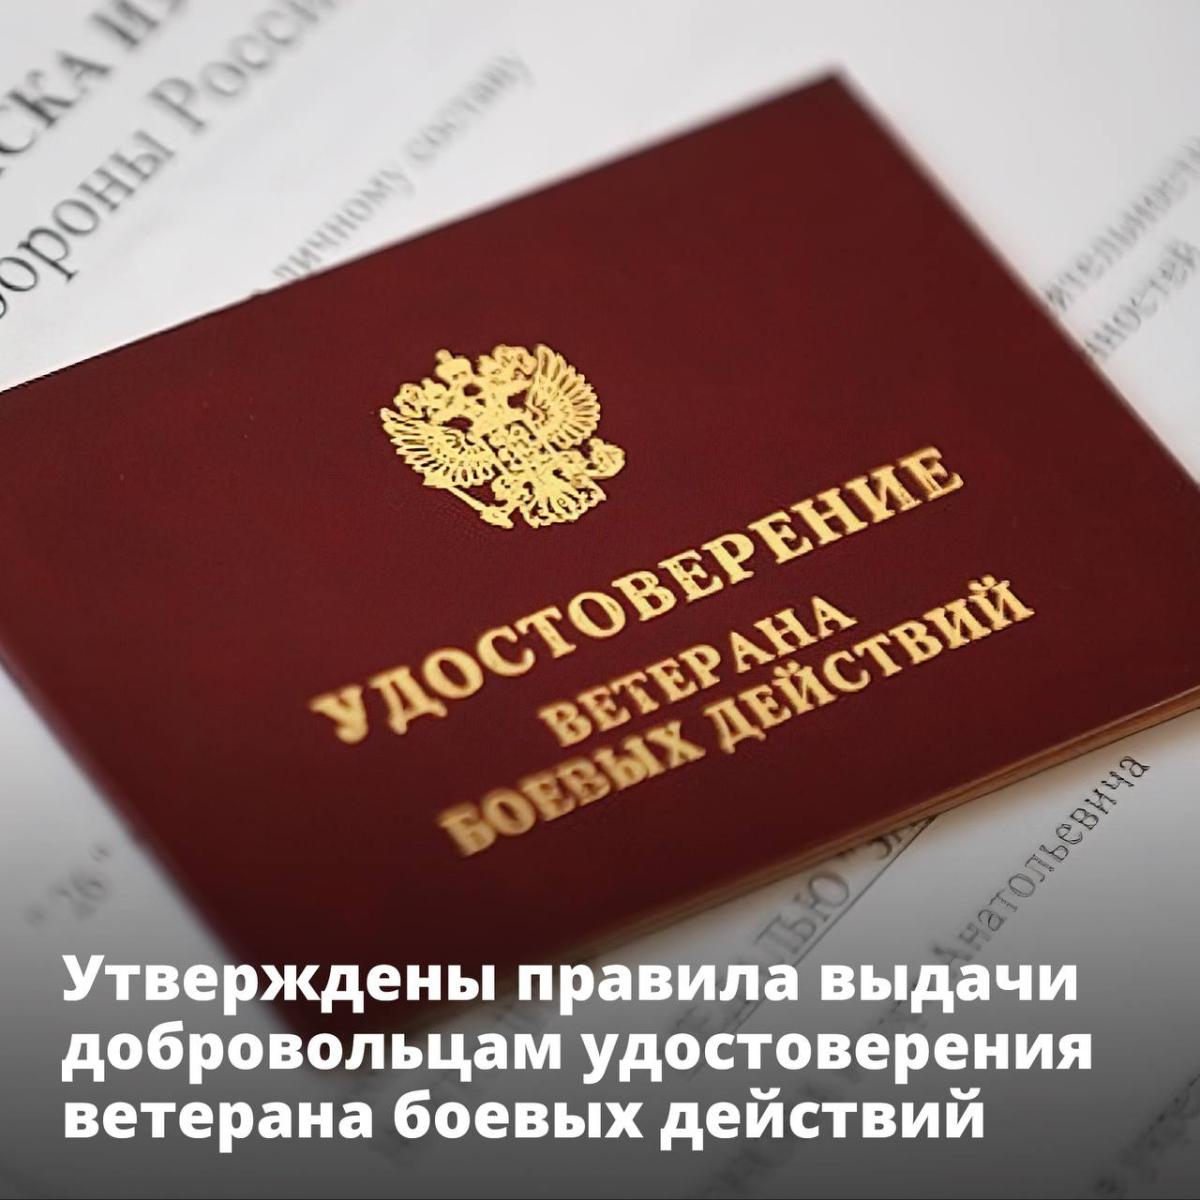 Добровольцы-участники СВО из Мордовии получат удостоверения ветерана боевых действий